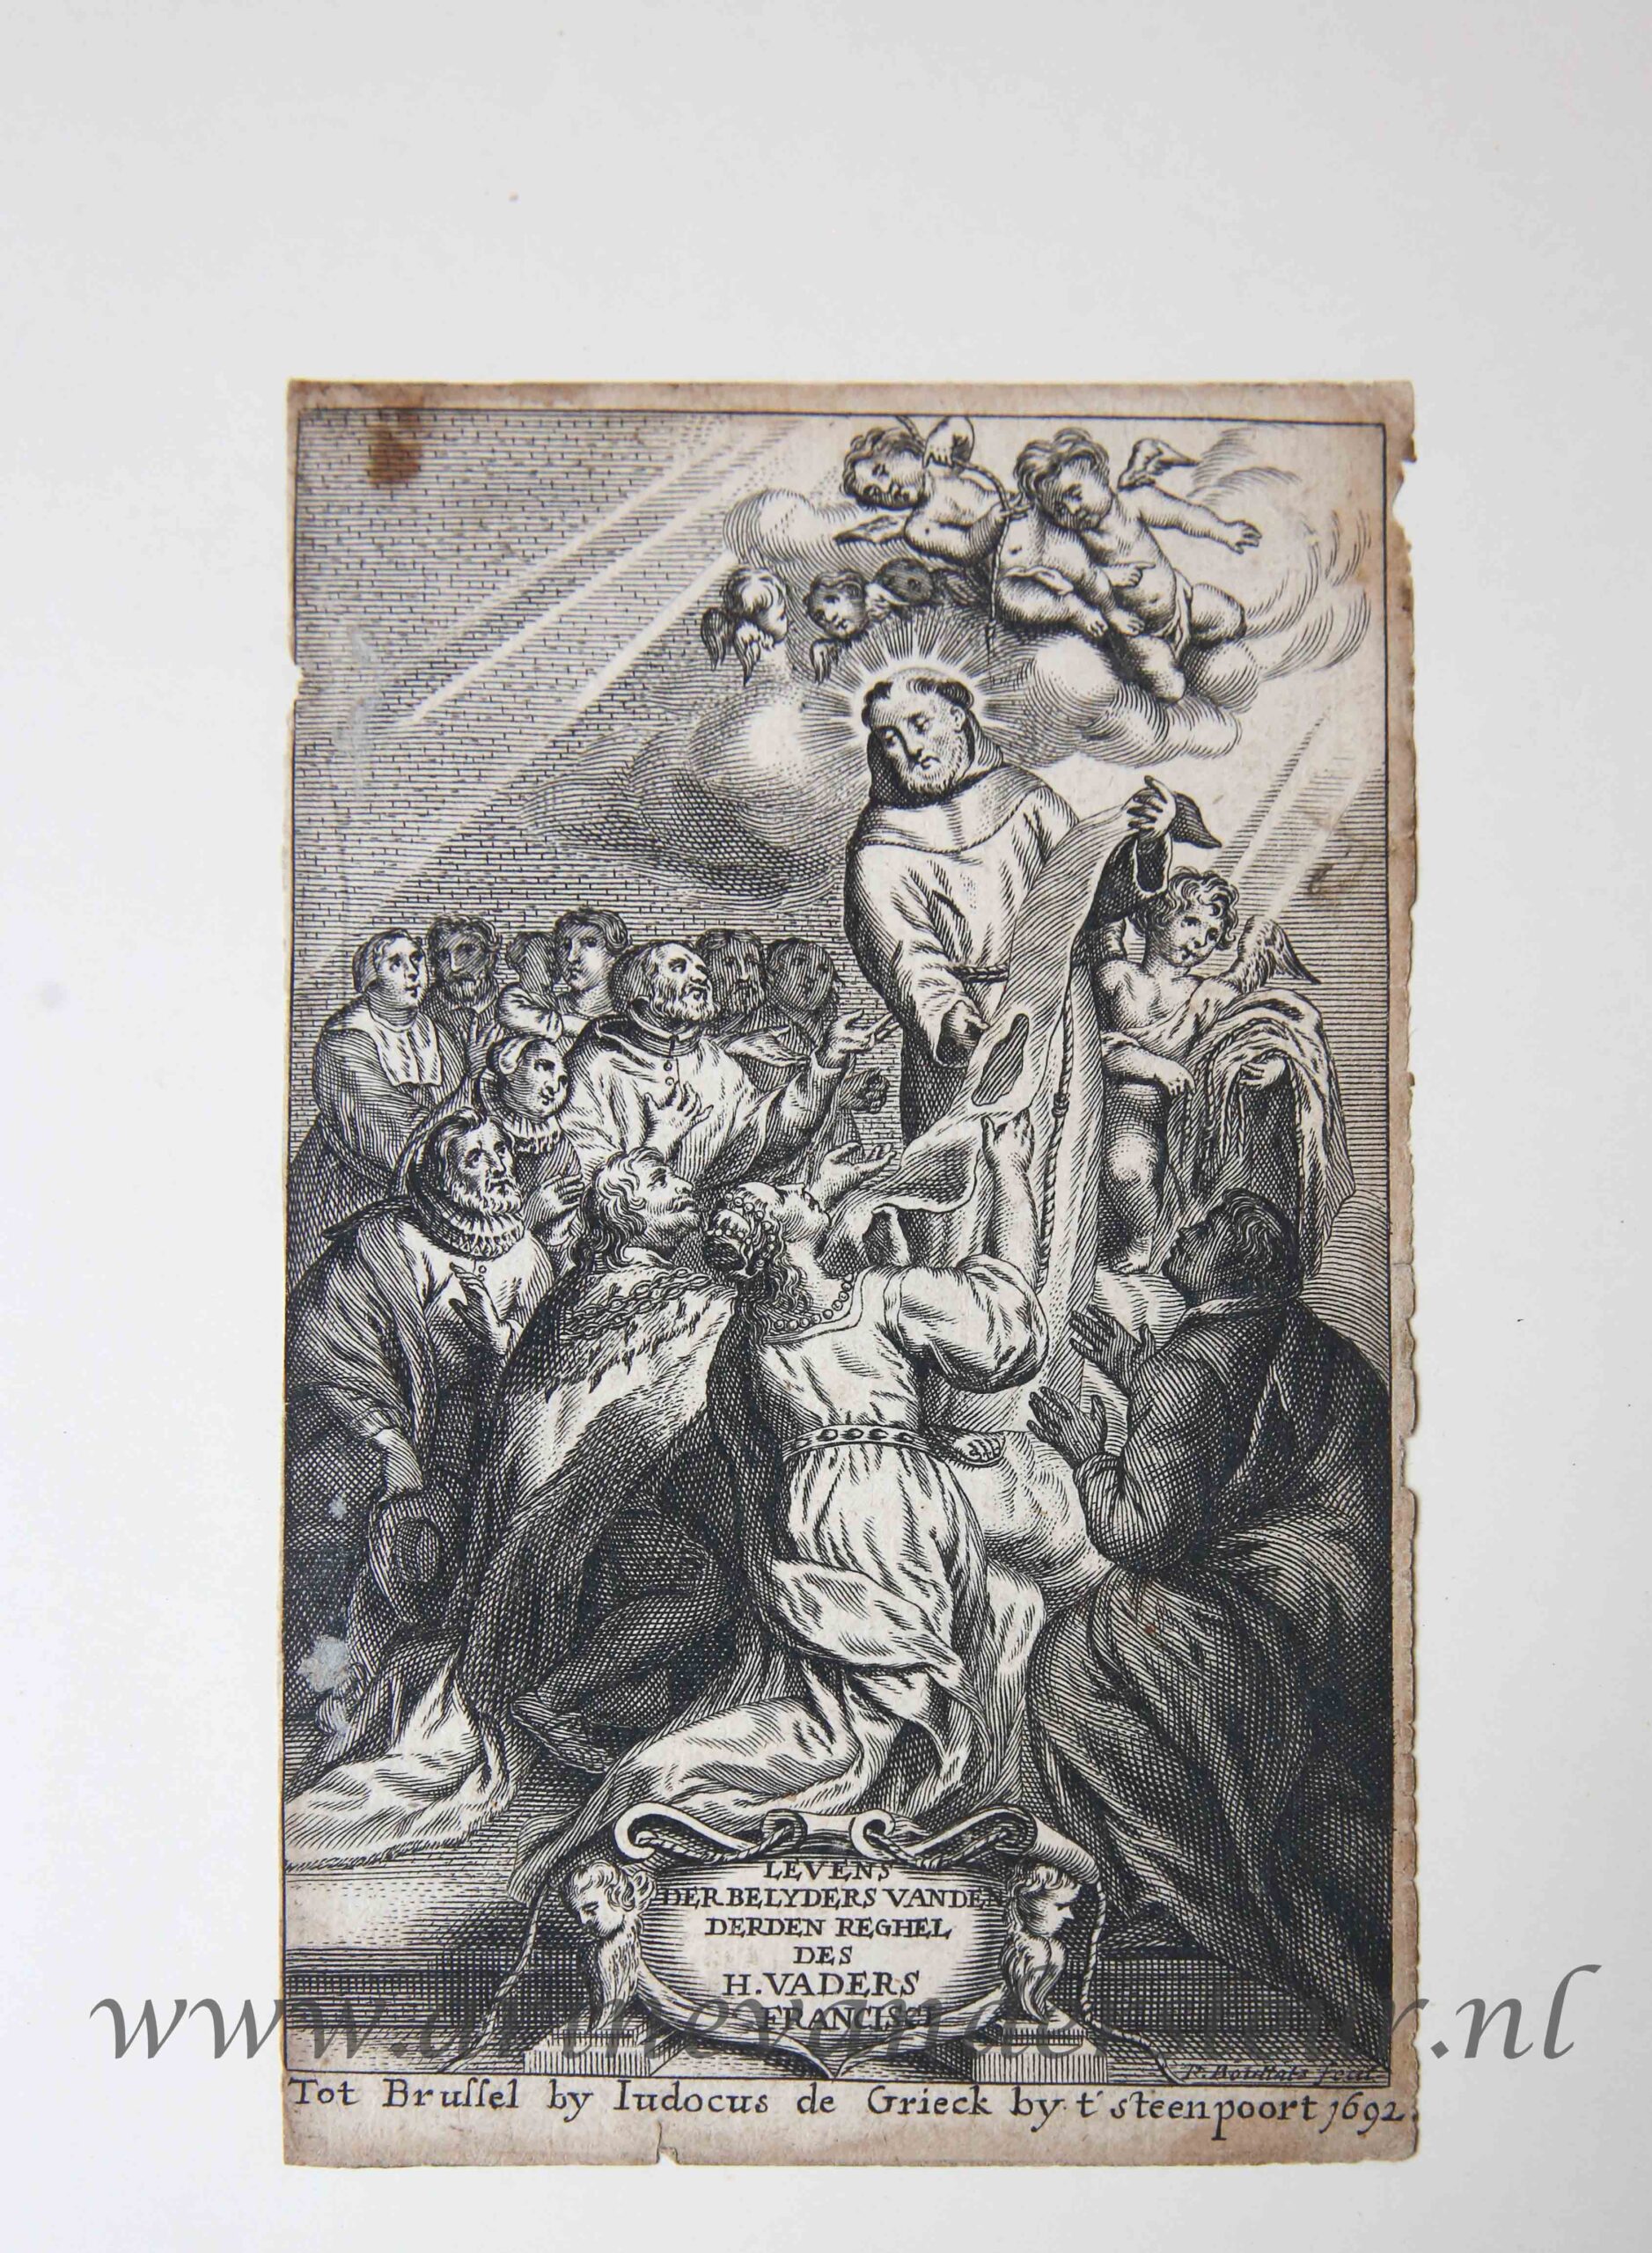 [Antique title page, 1692] LEVENS DER BELYDERS VAN DE DERDEN REGHEL DES H. VADERS FRANCISCI, published 1692, 1 p.